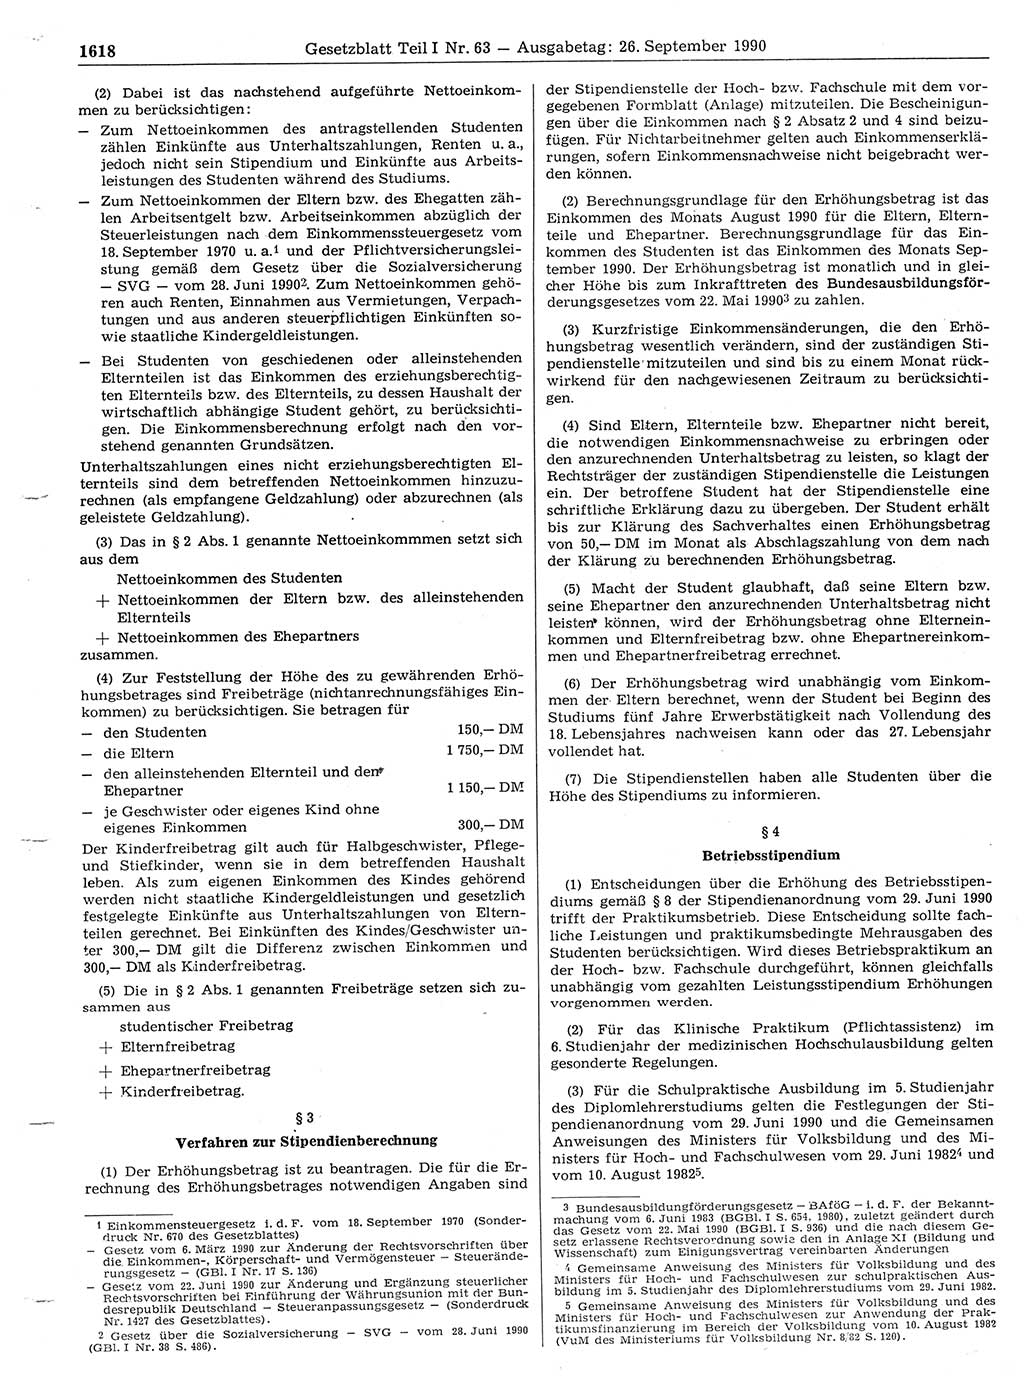 Gesetzblatt (GBl.) der Deutschen Demokratischen Republik (DDR) Teil Ⅰ 1990, Seite 1618 (GBl. DDR Ⅰ 1990, S. 1618)